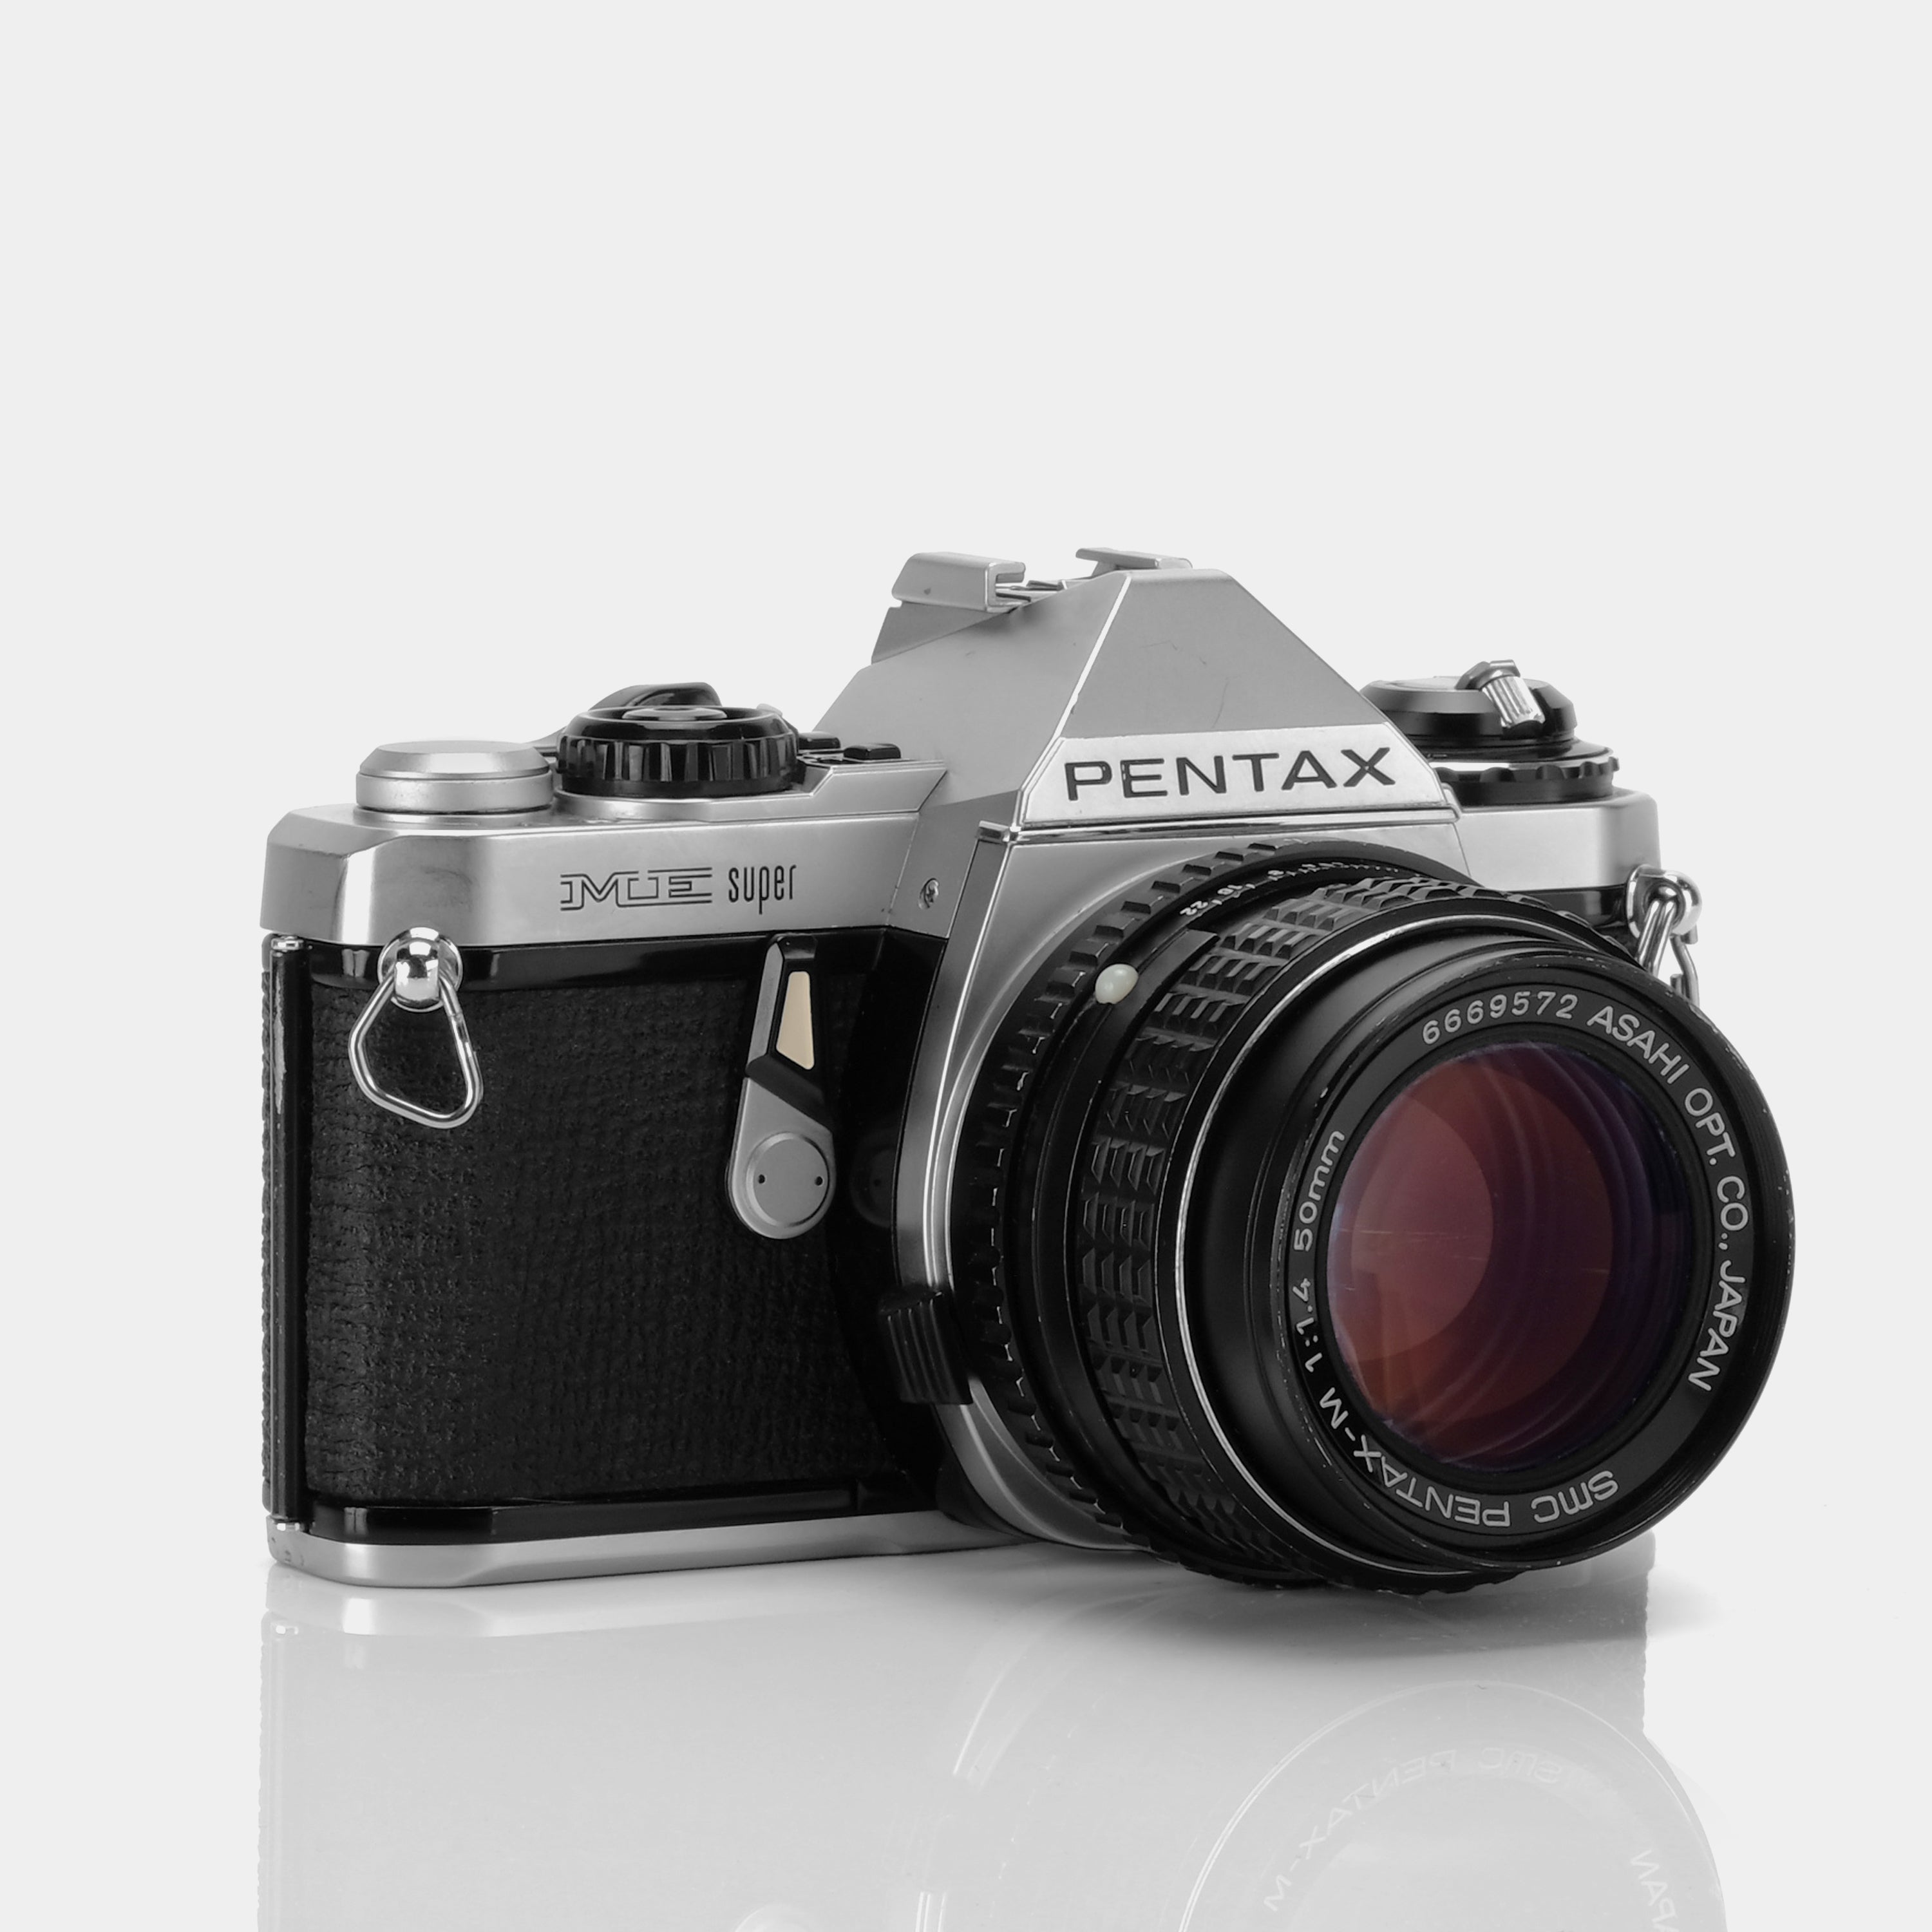 Pentax ME Super 35mm SLR Film Camera